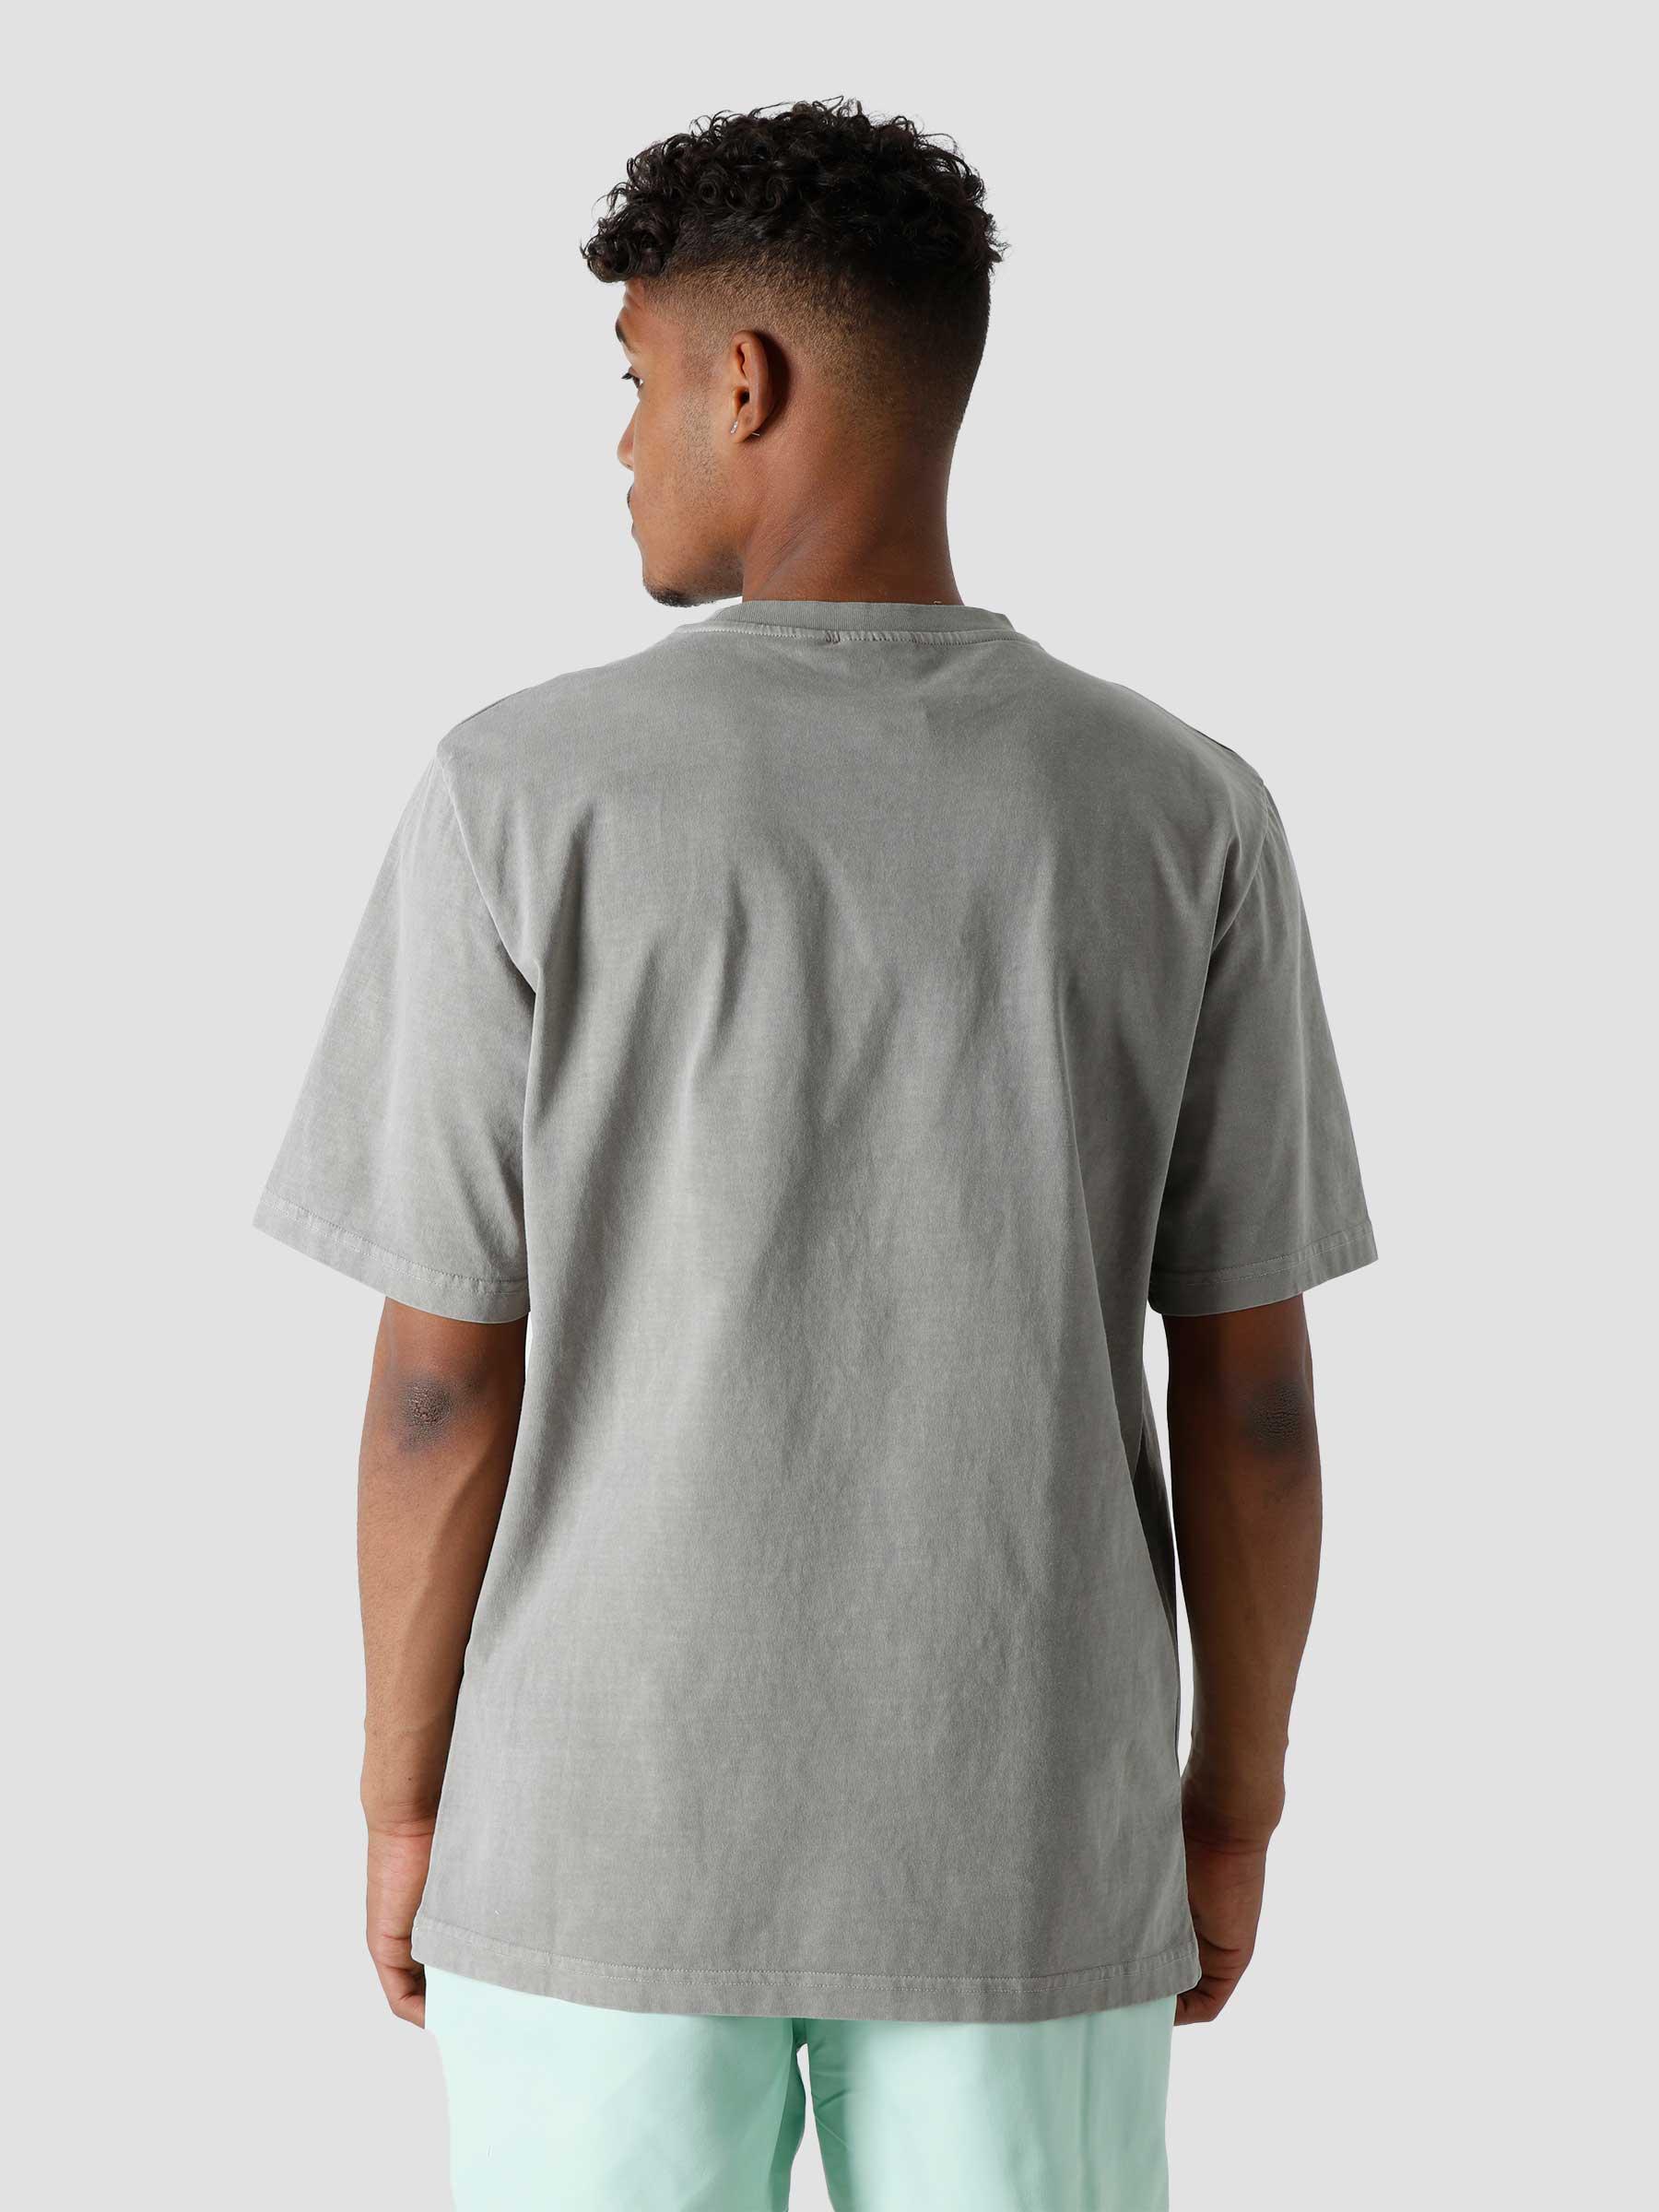 Paniz T-Shirt Mudstone 2213107